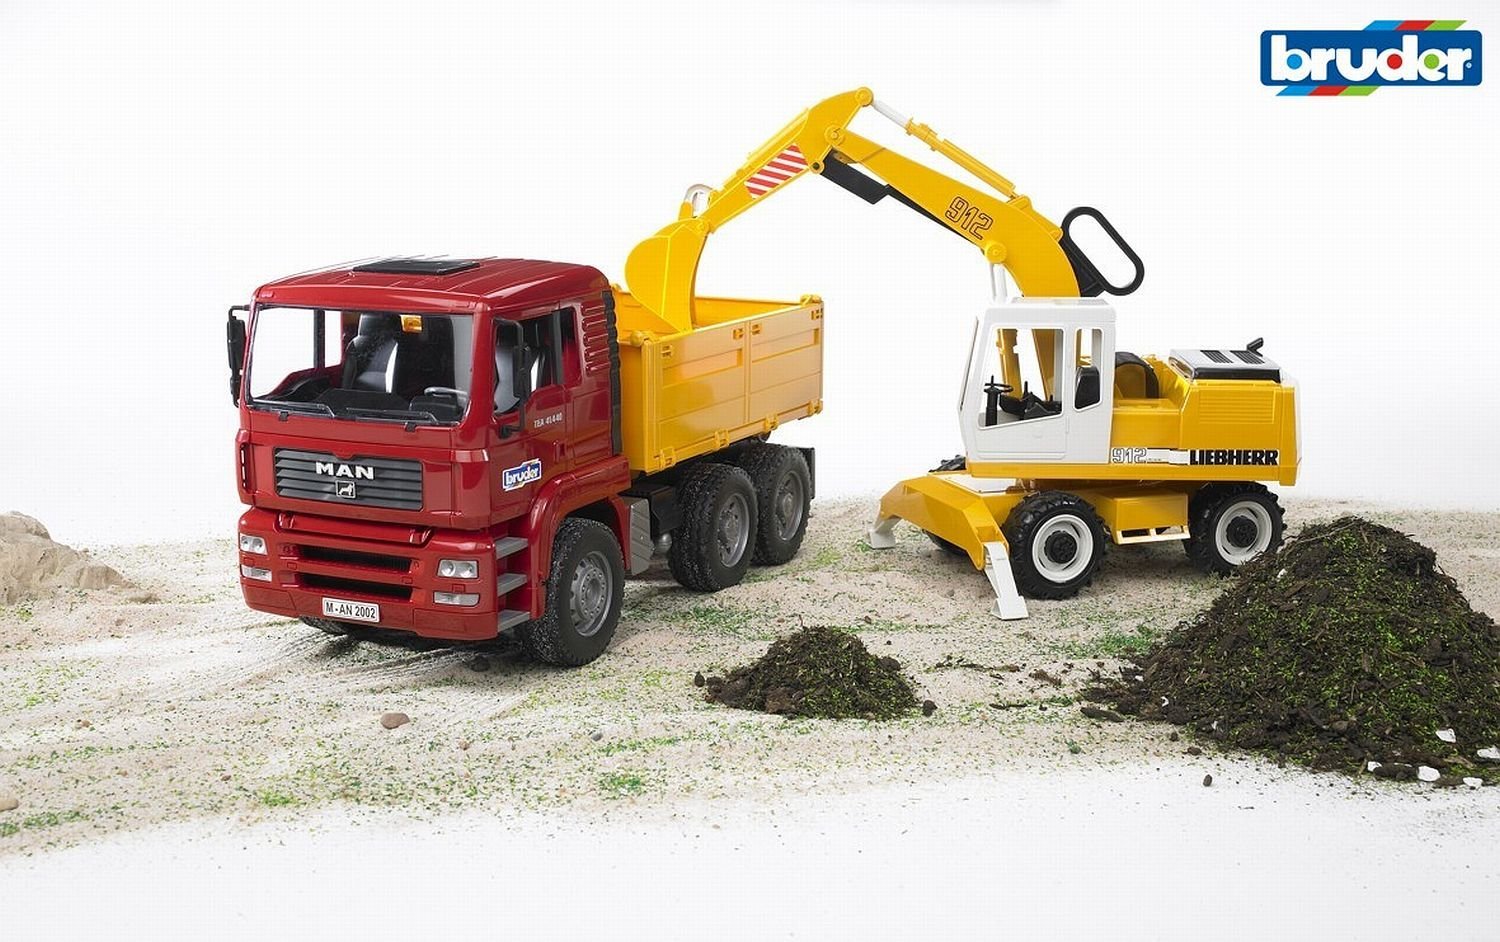 BRUDER - MAN TGA Construction truck with Liebherr Excavator- 2751